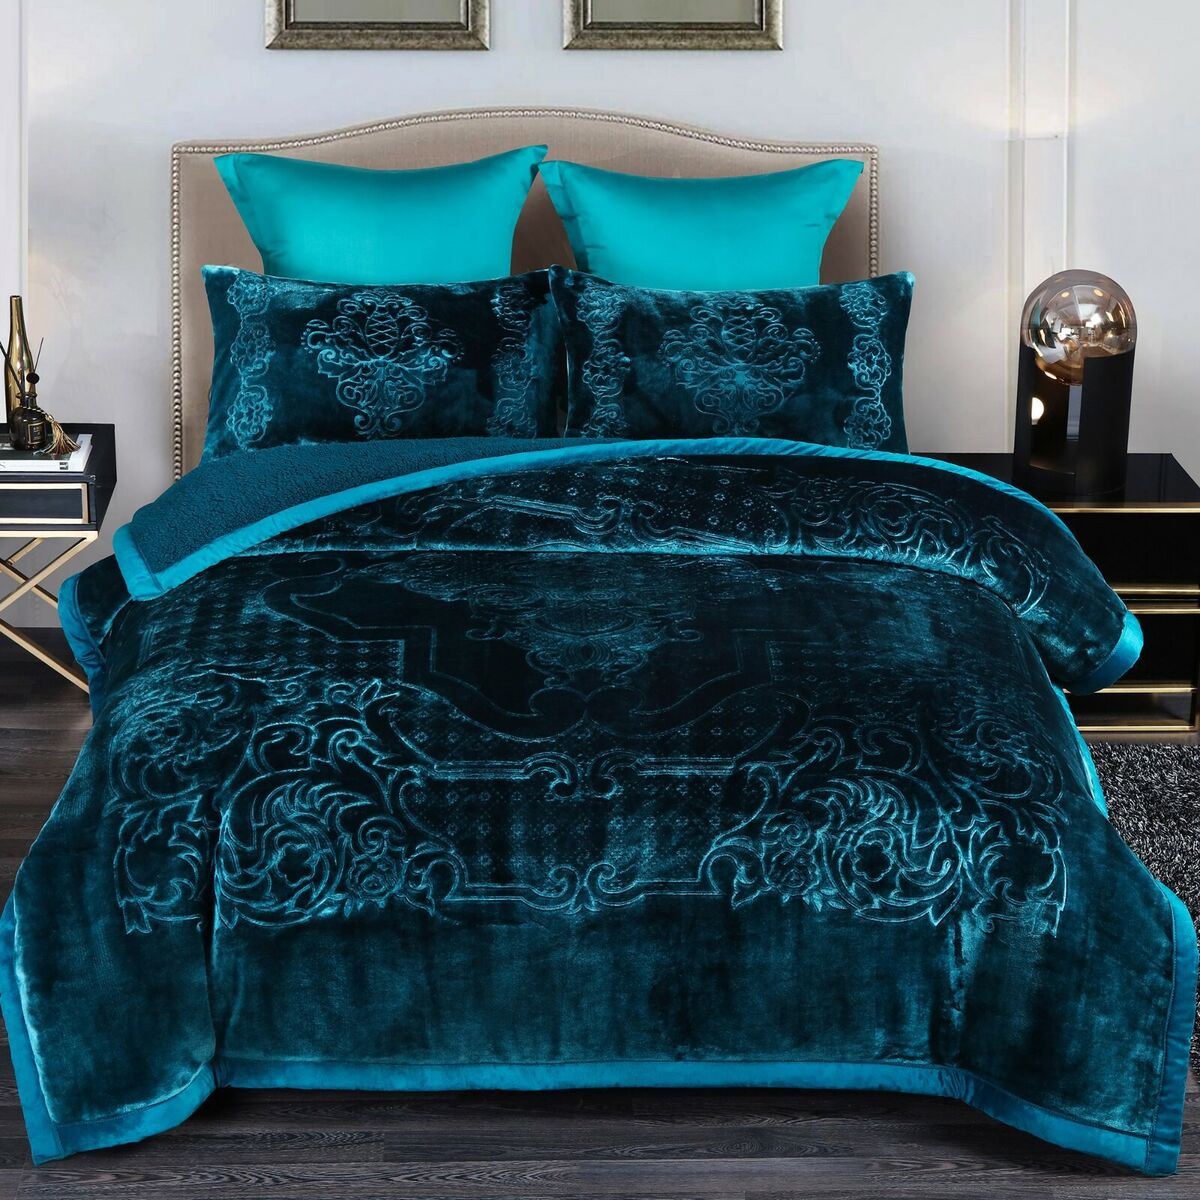 Heavy Mink Blanket Blanket Comforter Printed Embossed Bed Blanket eBay